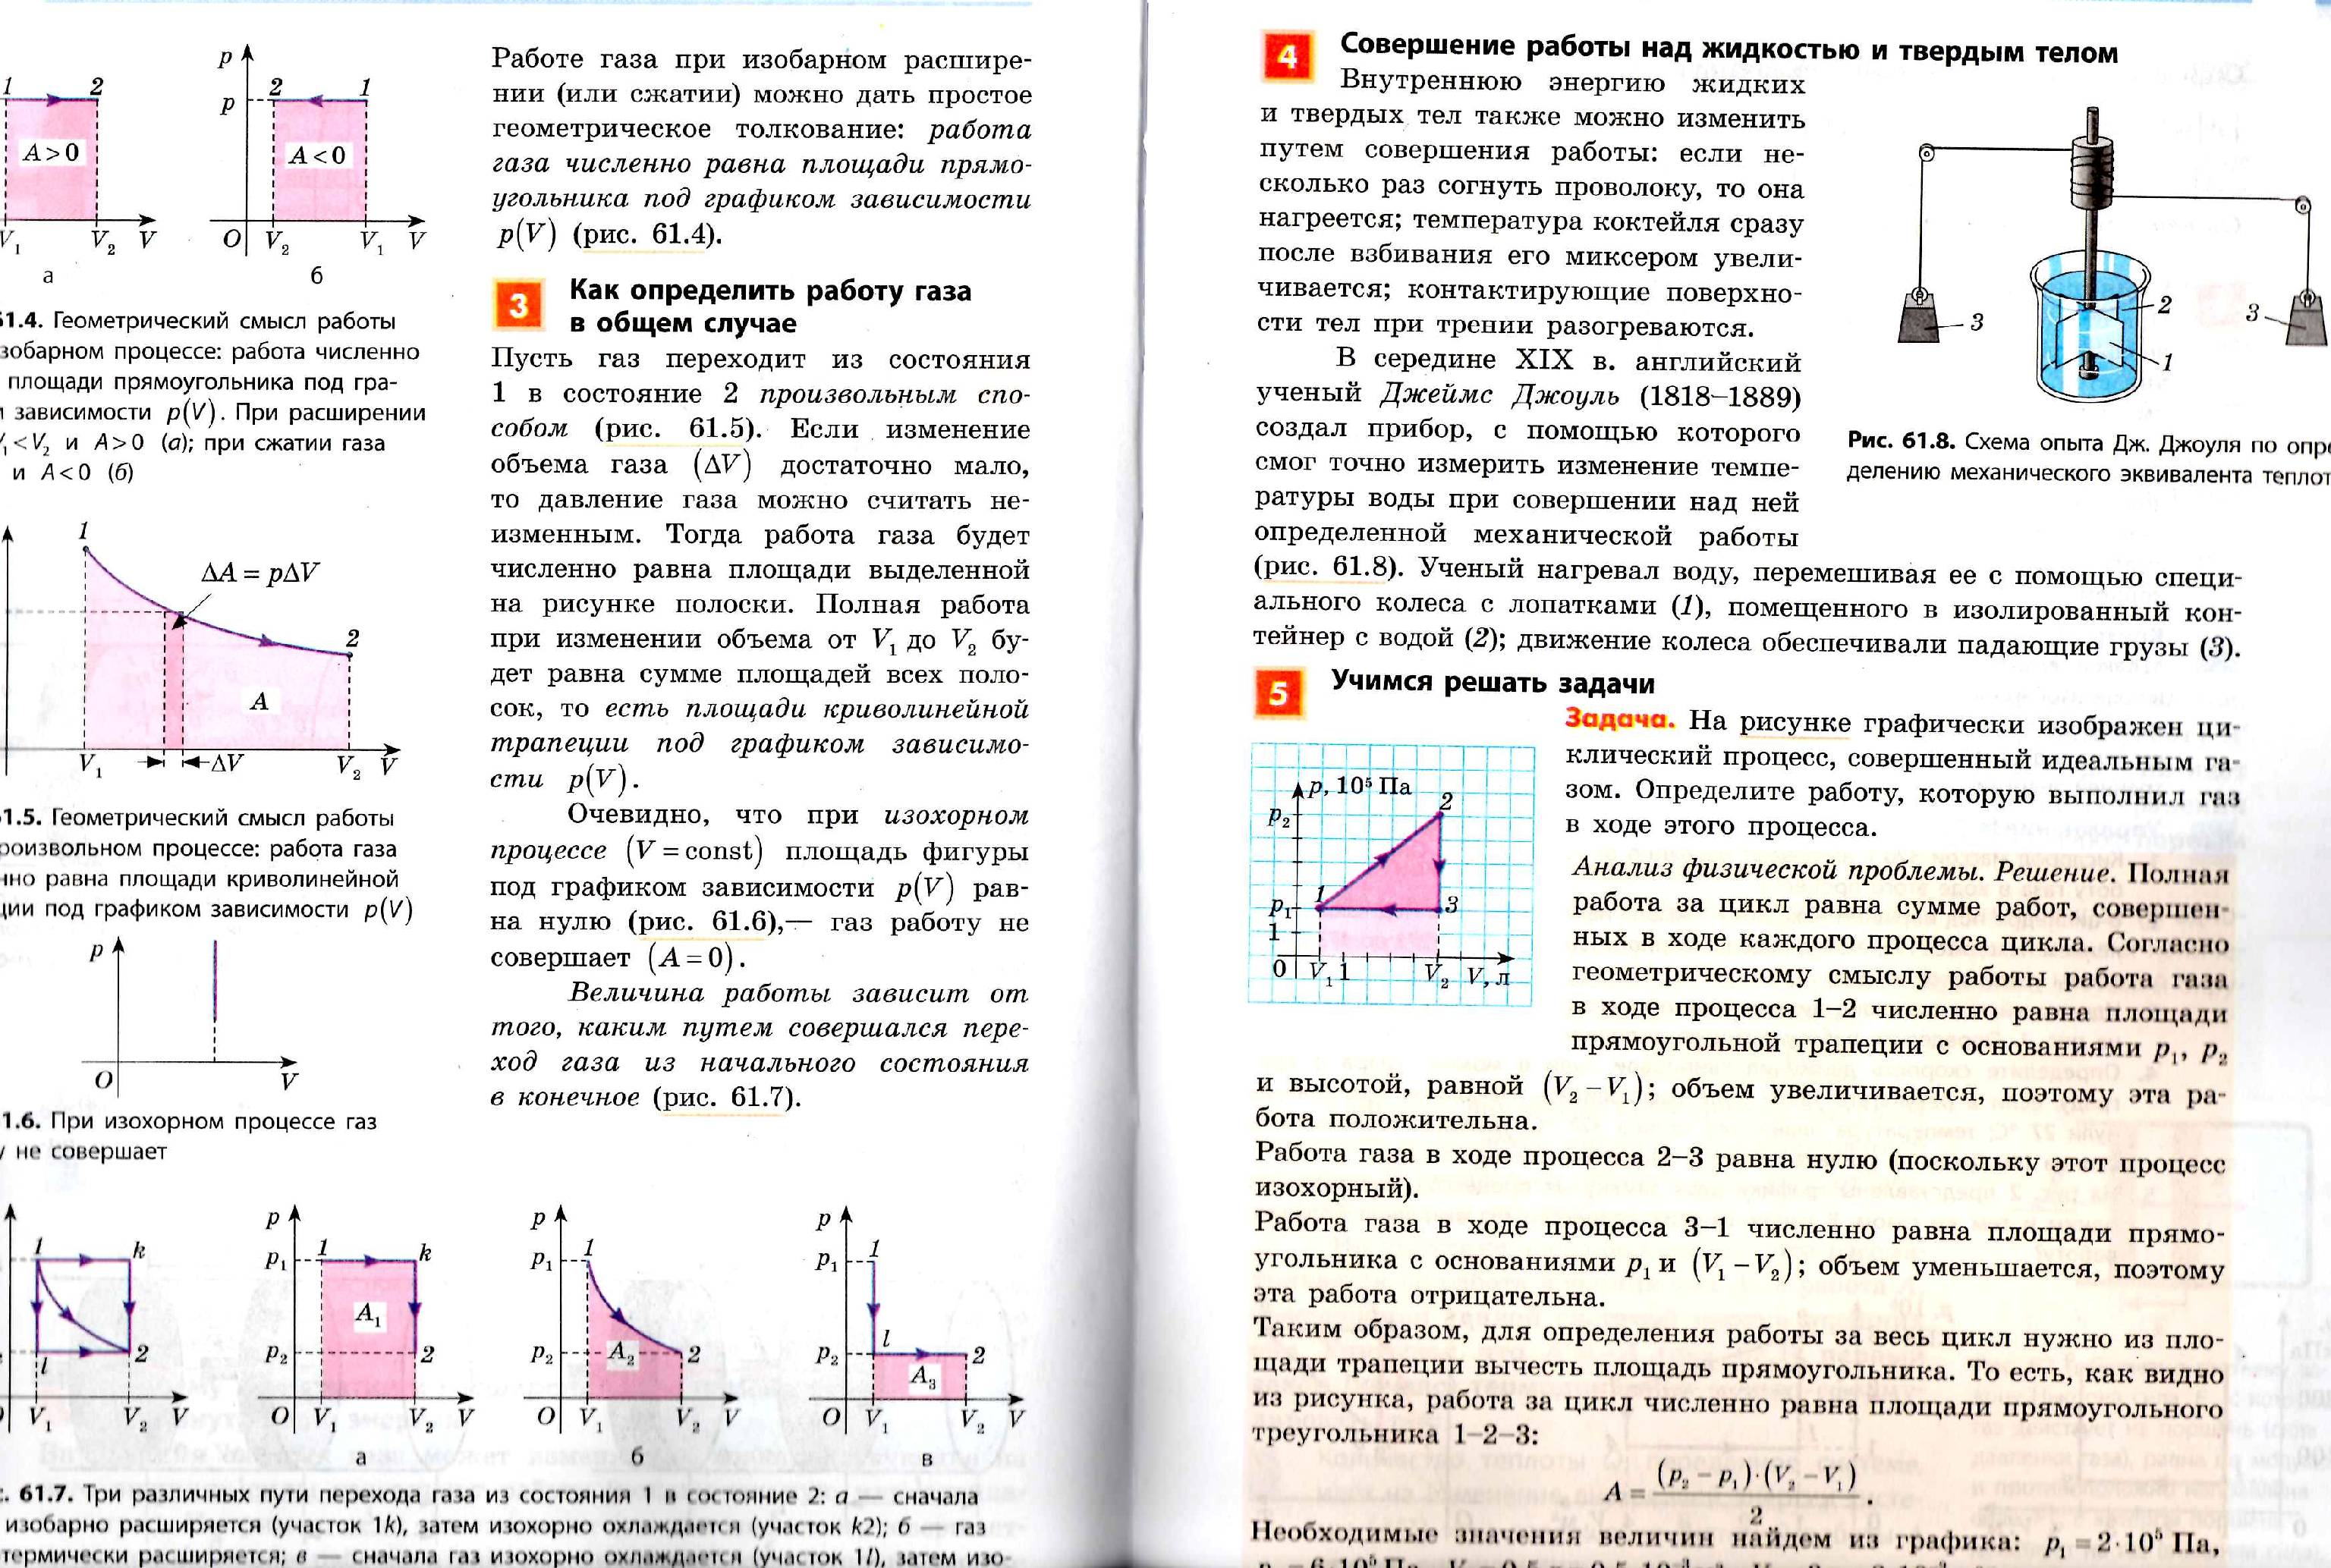 Различные формы проверки домашнего задания по физике с использованием опорного конспекта